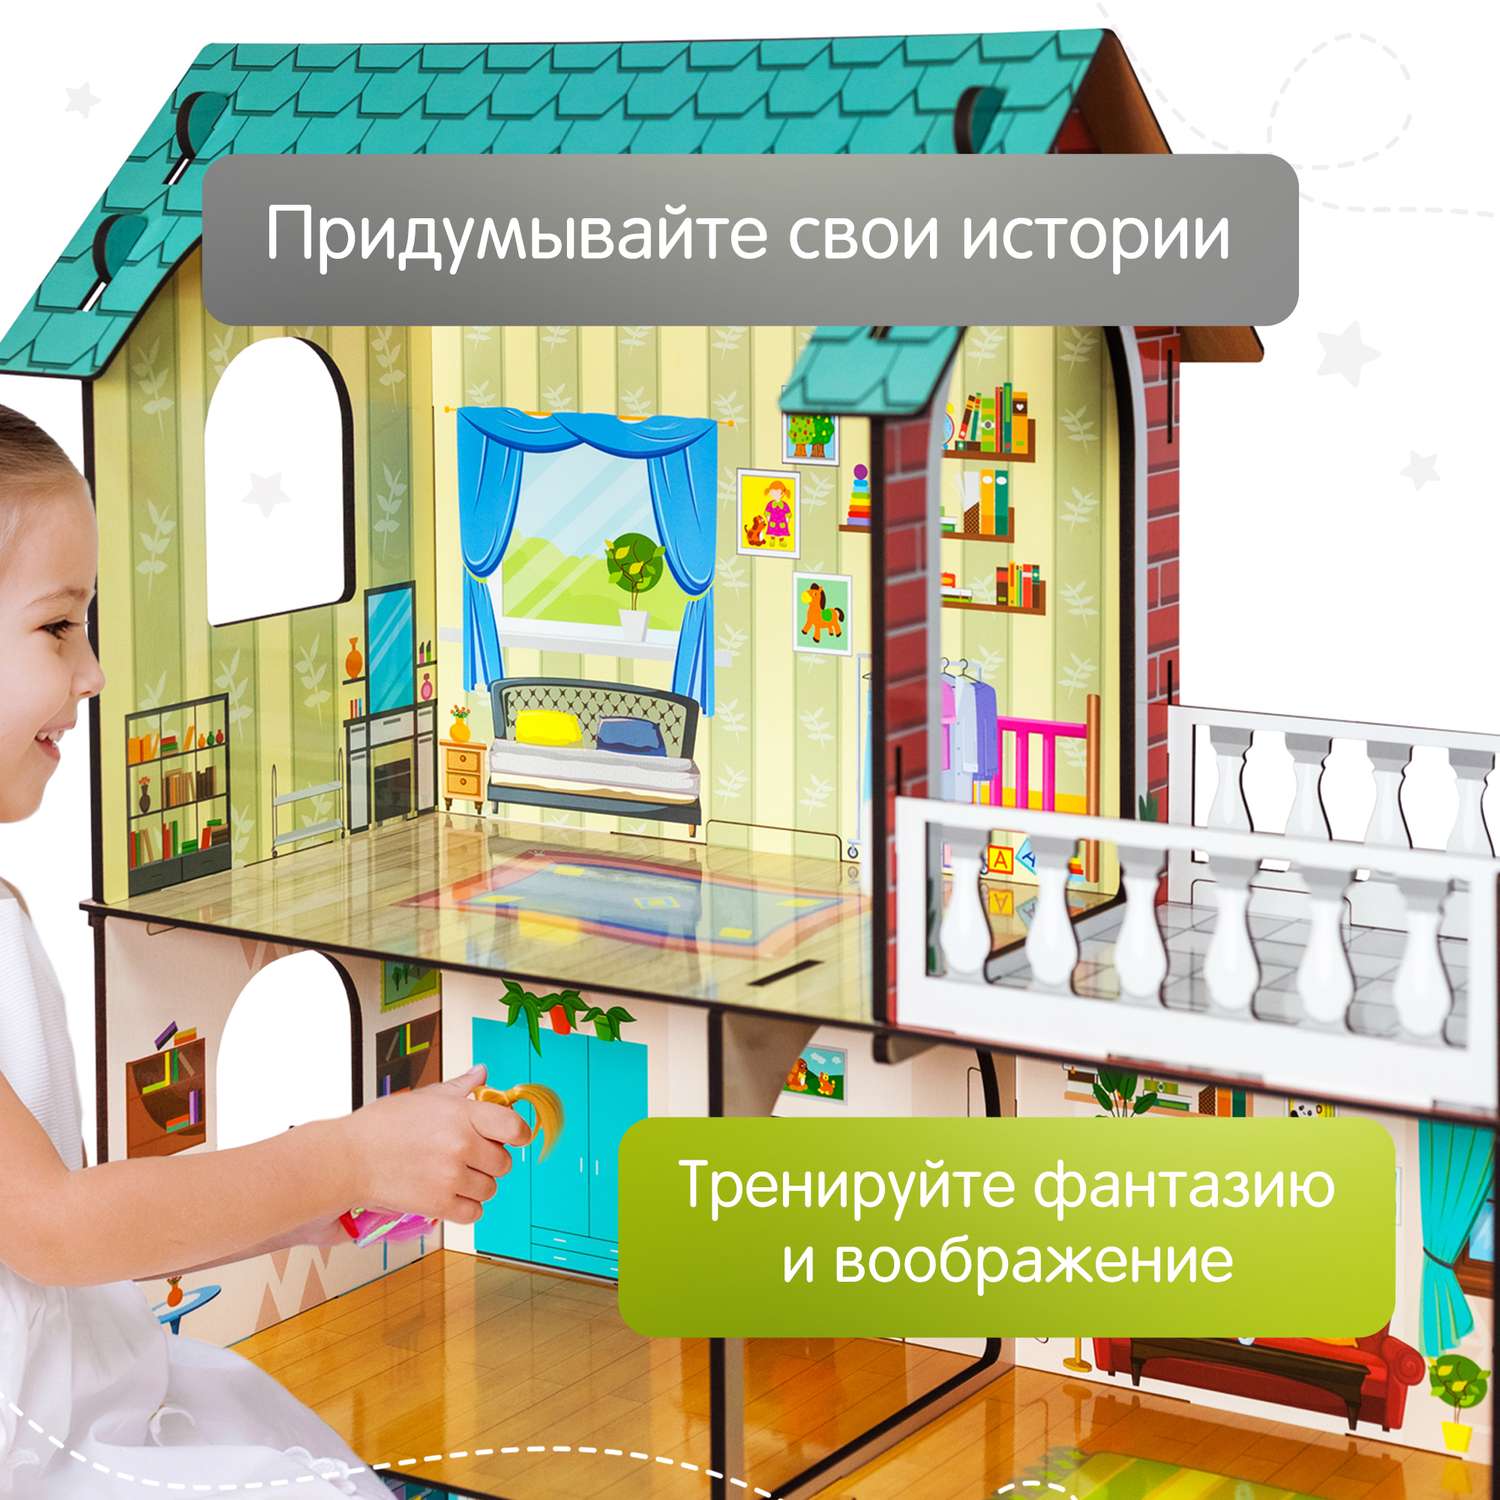 Кукольный дом Alatoys развивающая деревянная игрушка для малышей Монтессори КД01 - фото 2